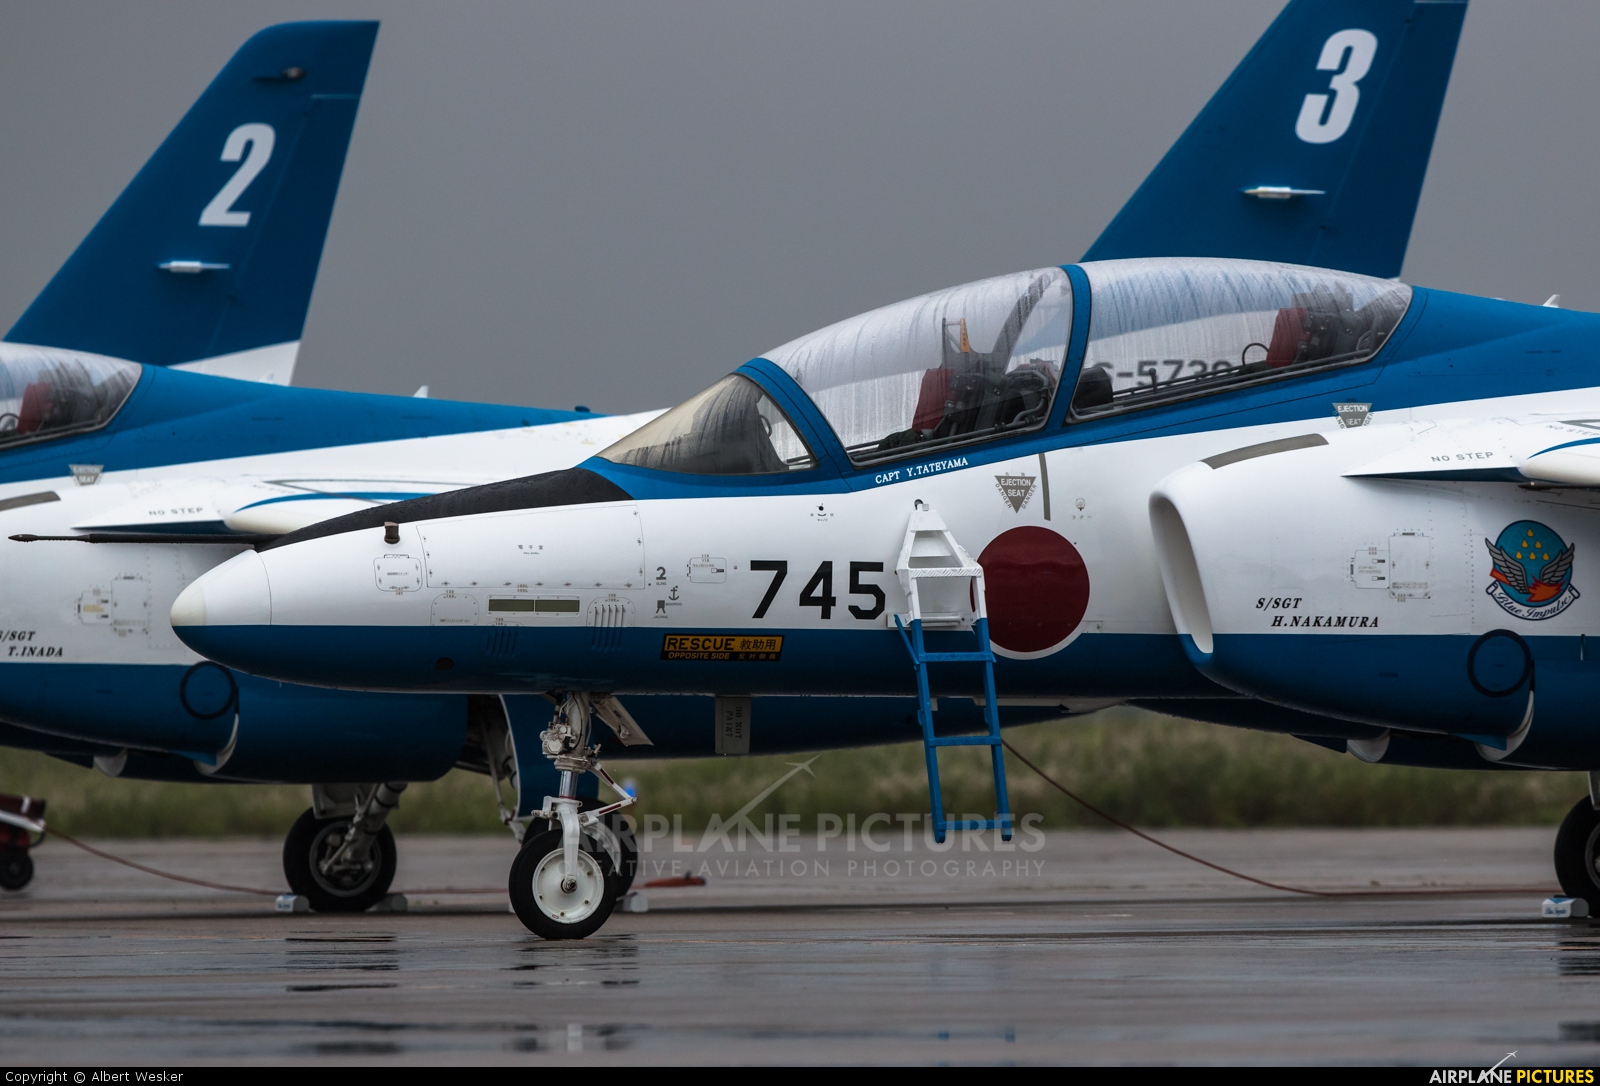 Japan - ASDF: Blue Impulse 66-5745 aircraft at Yonago - Miho AB